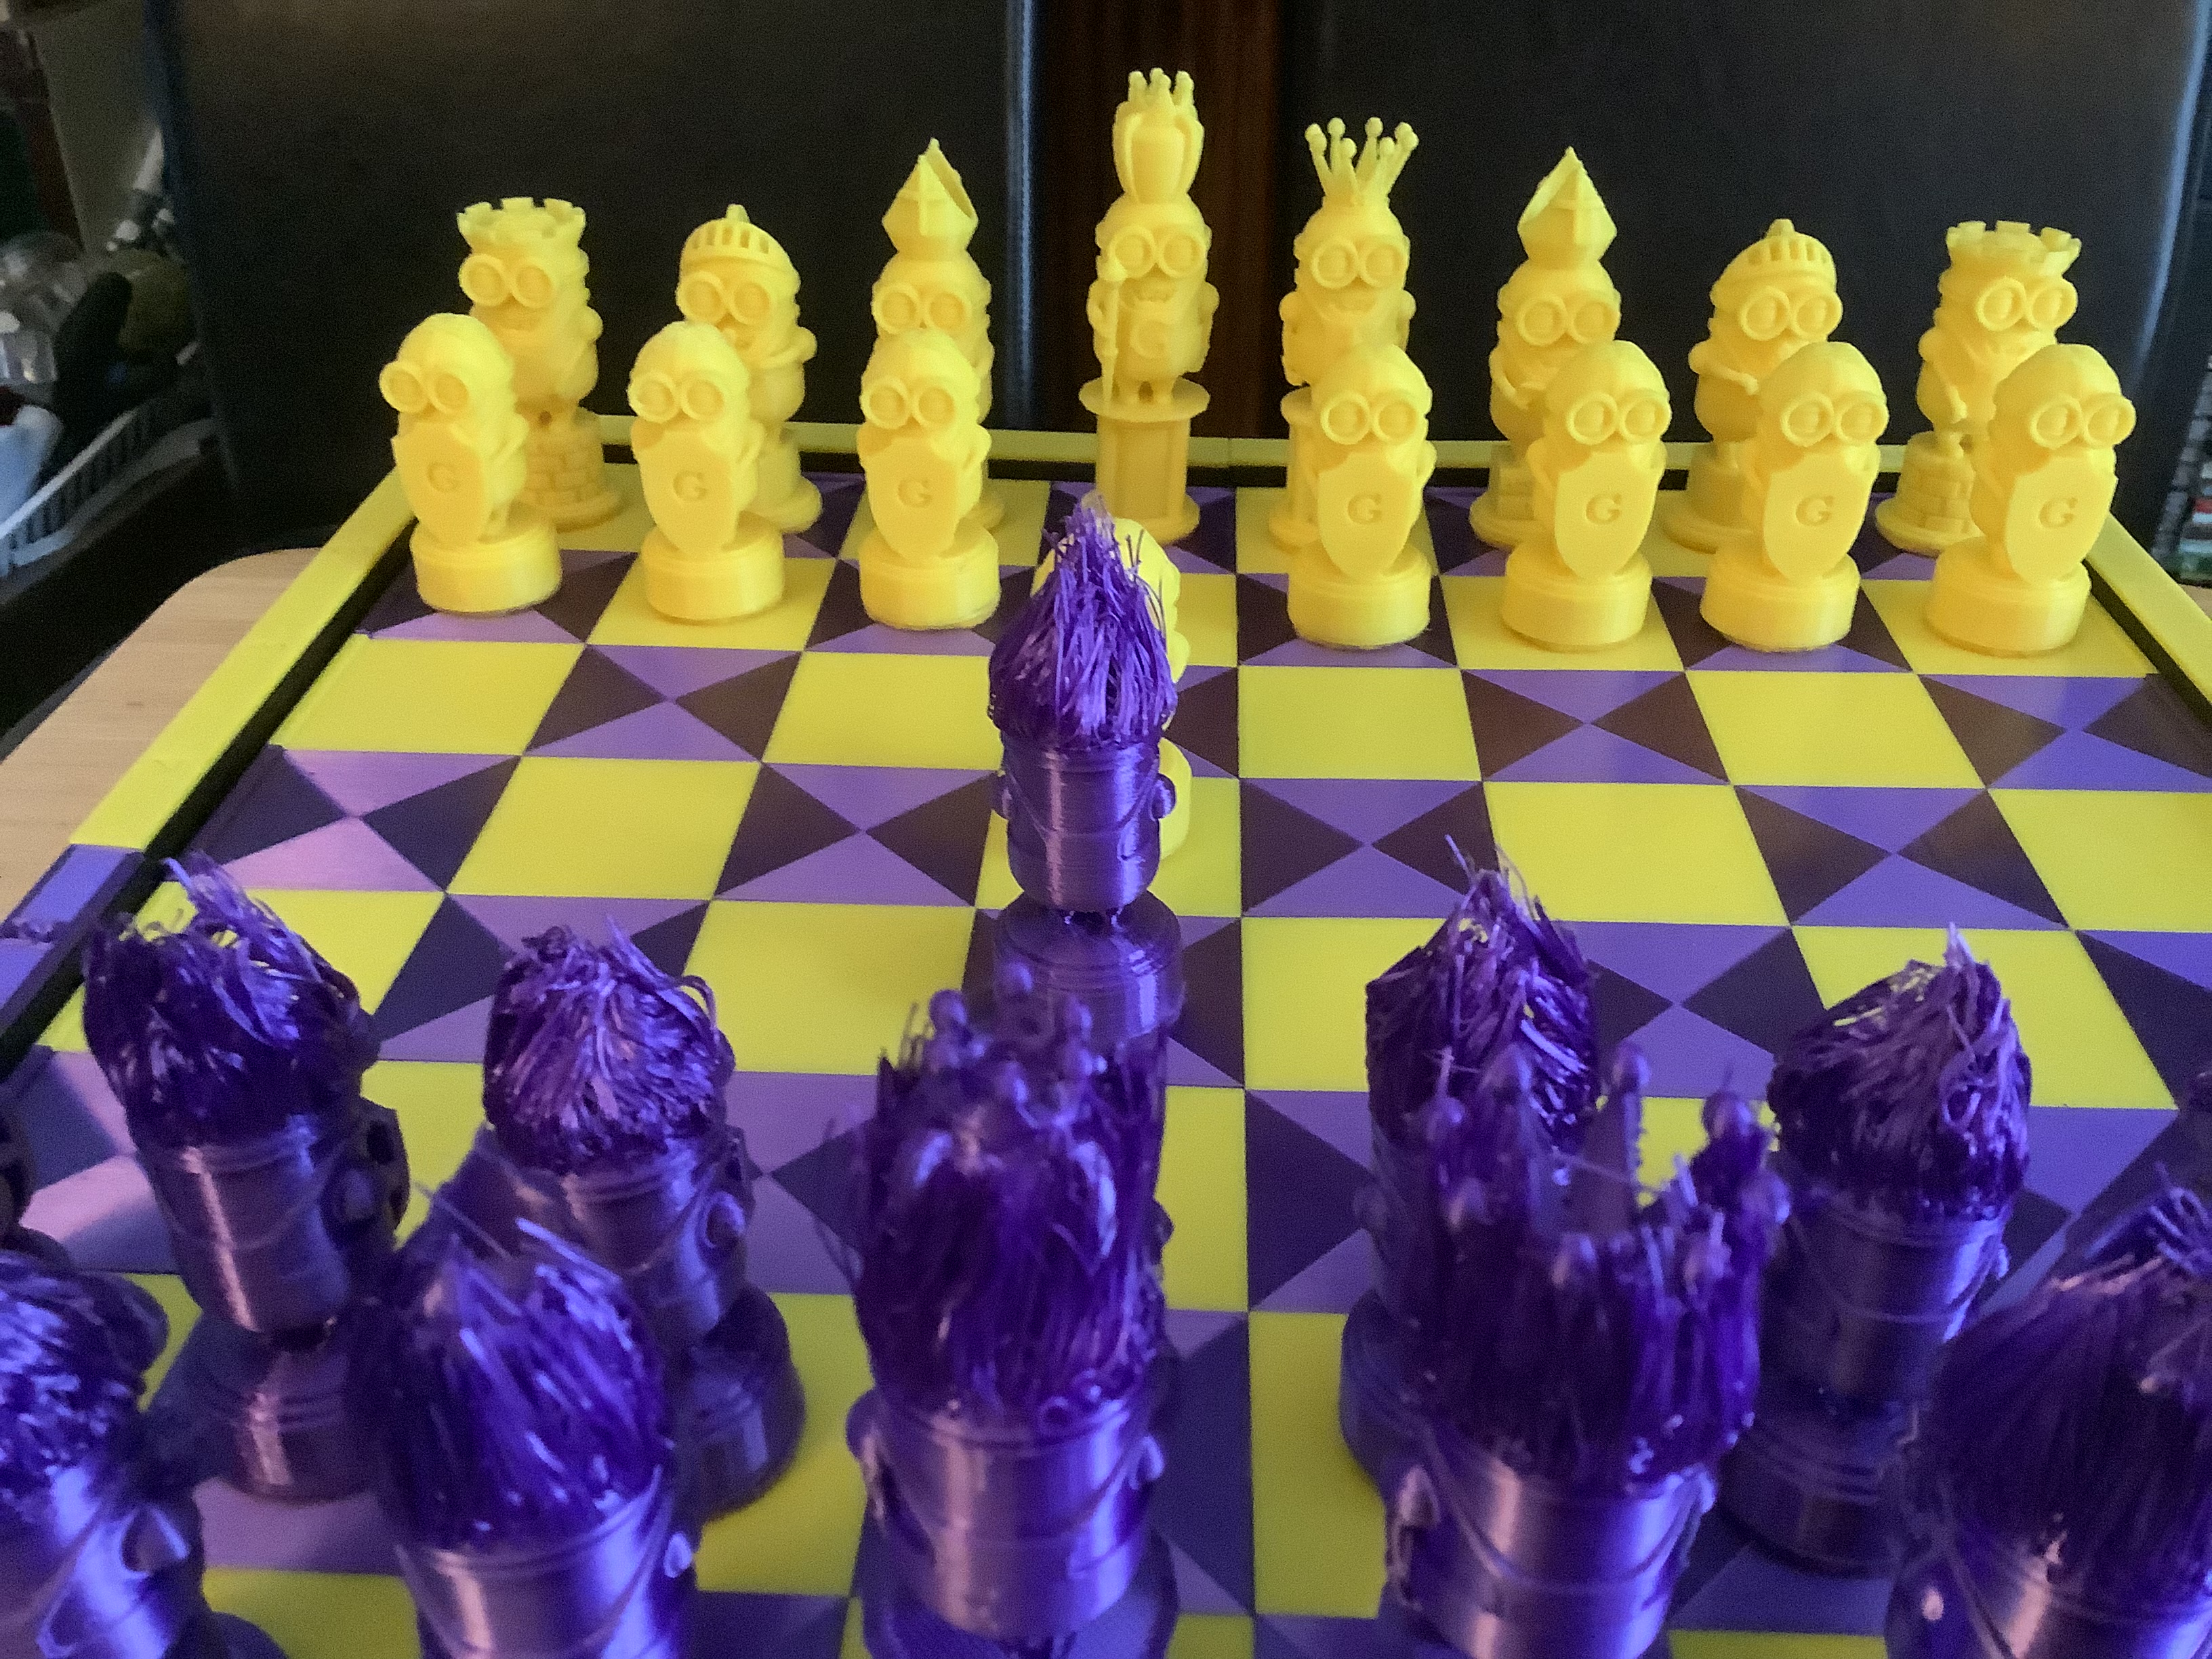 Gru Minions Chess Set